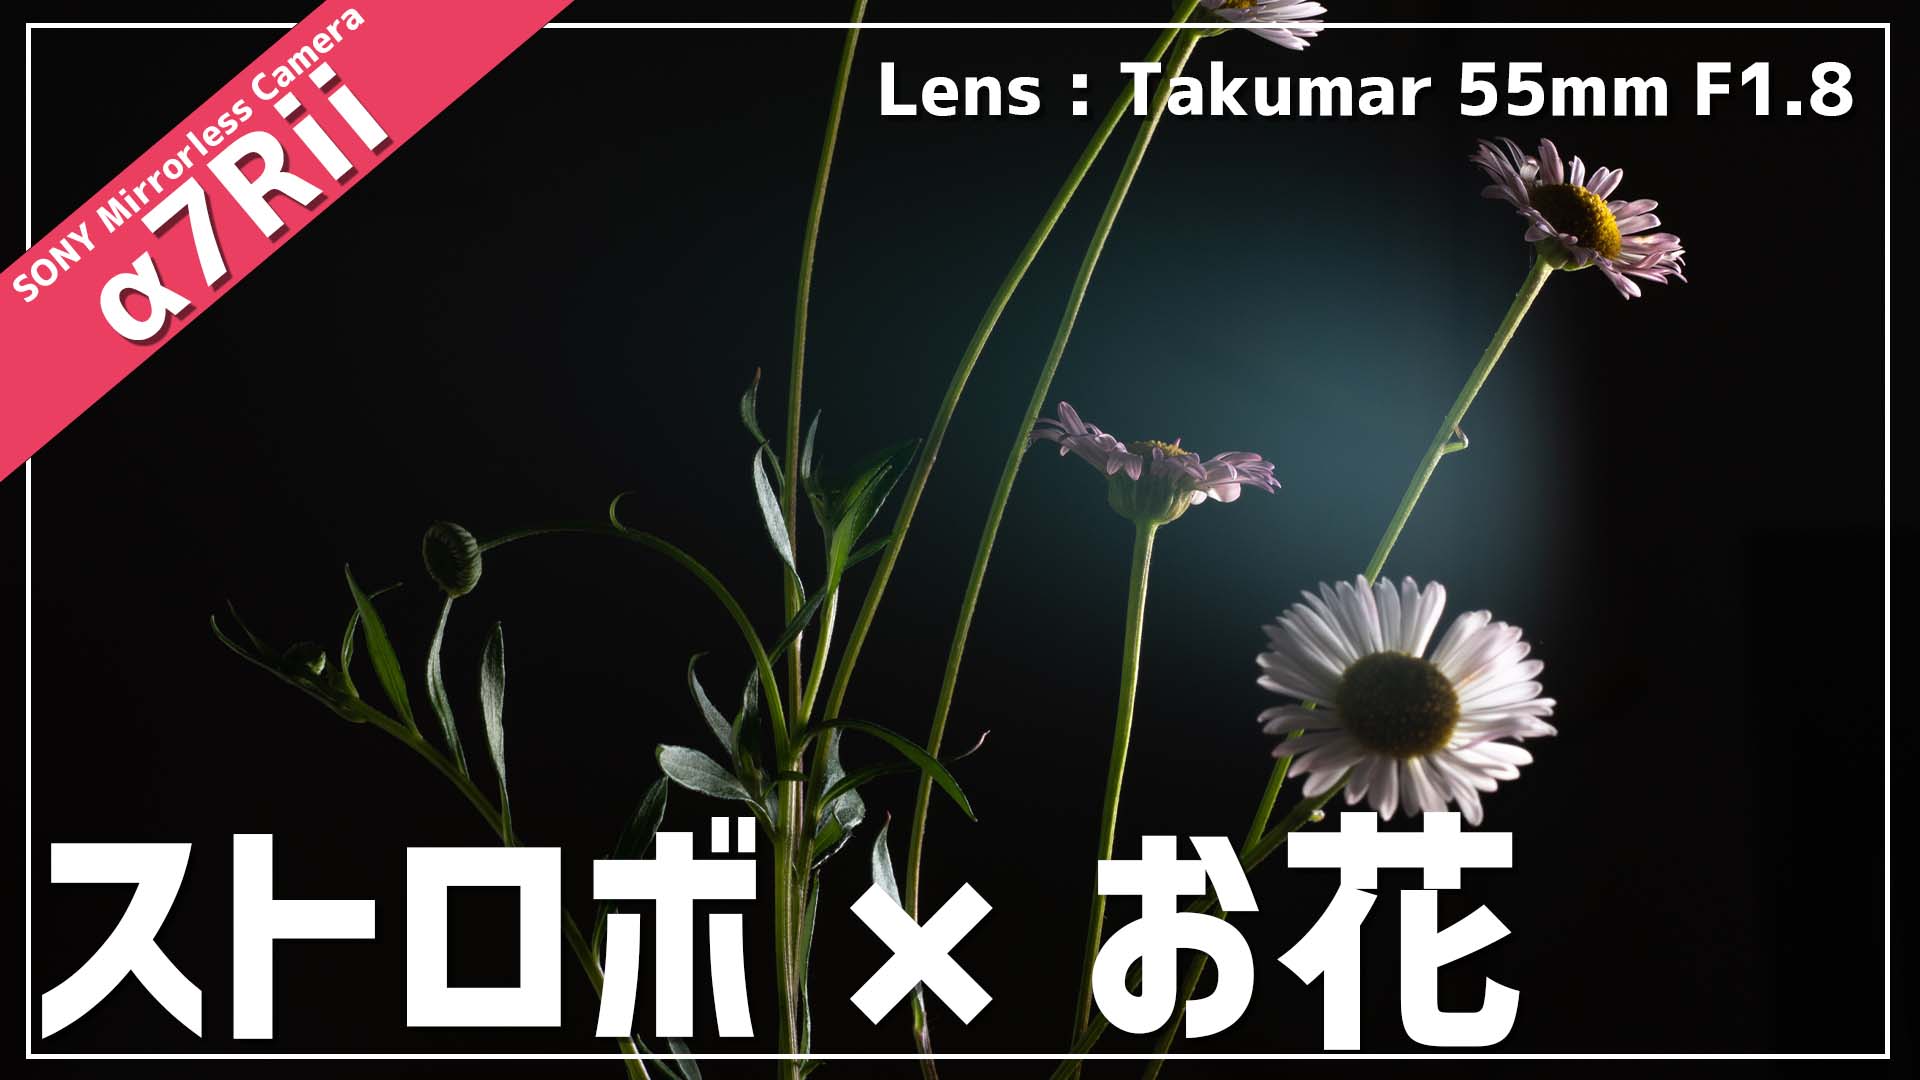 NEEWER TT560とSMC Takumar 55mmでお花を撮る